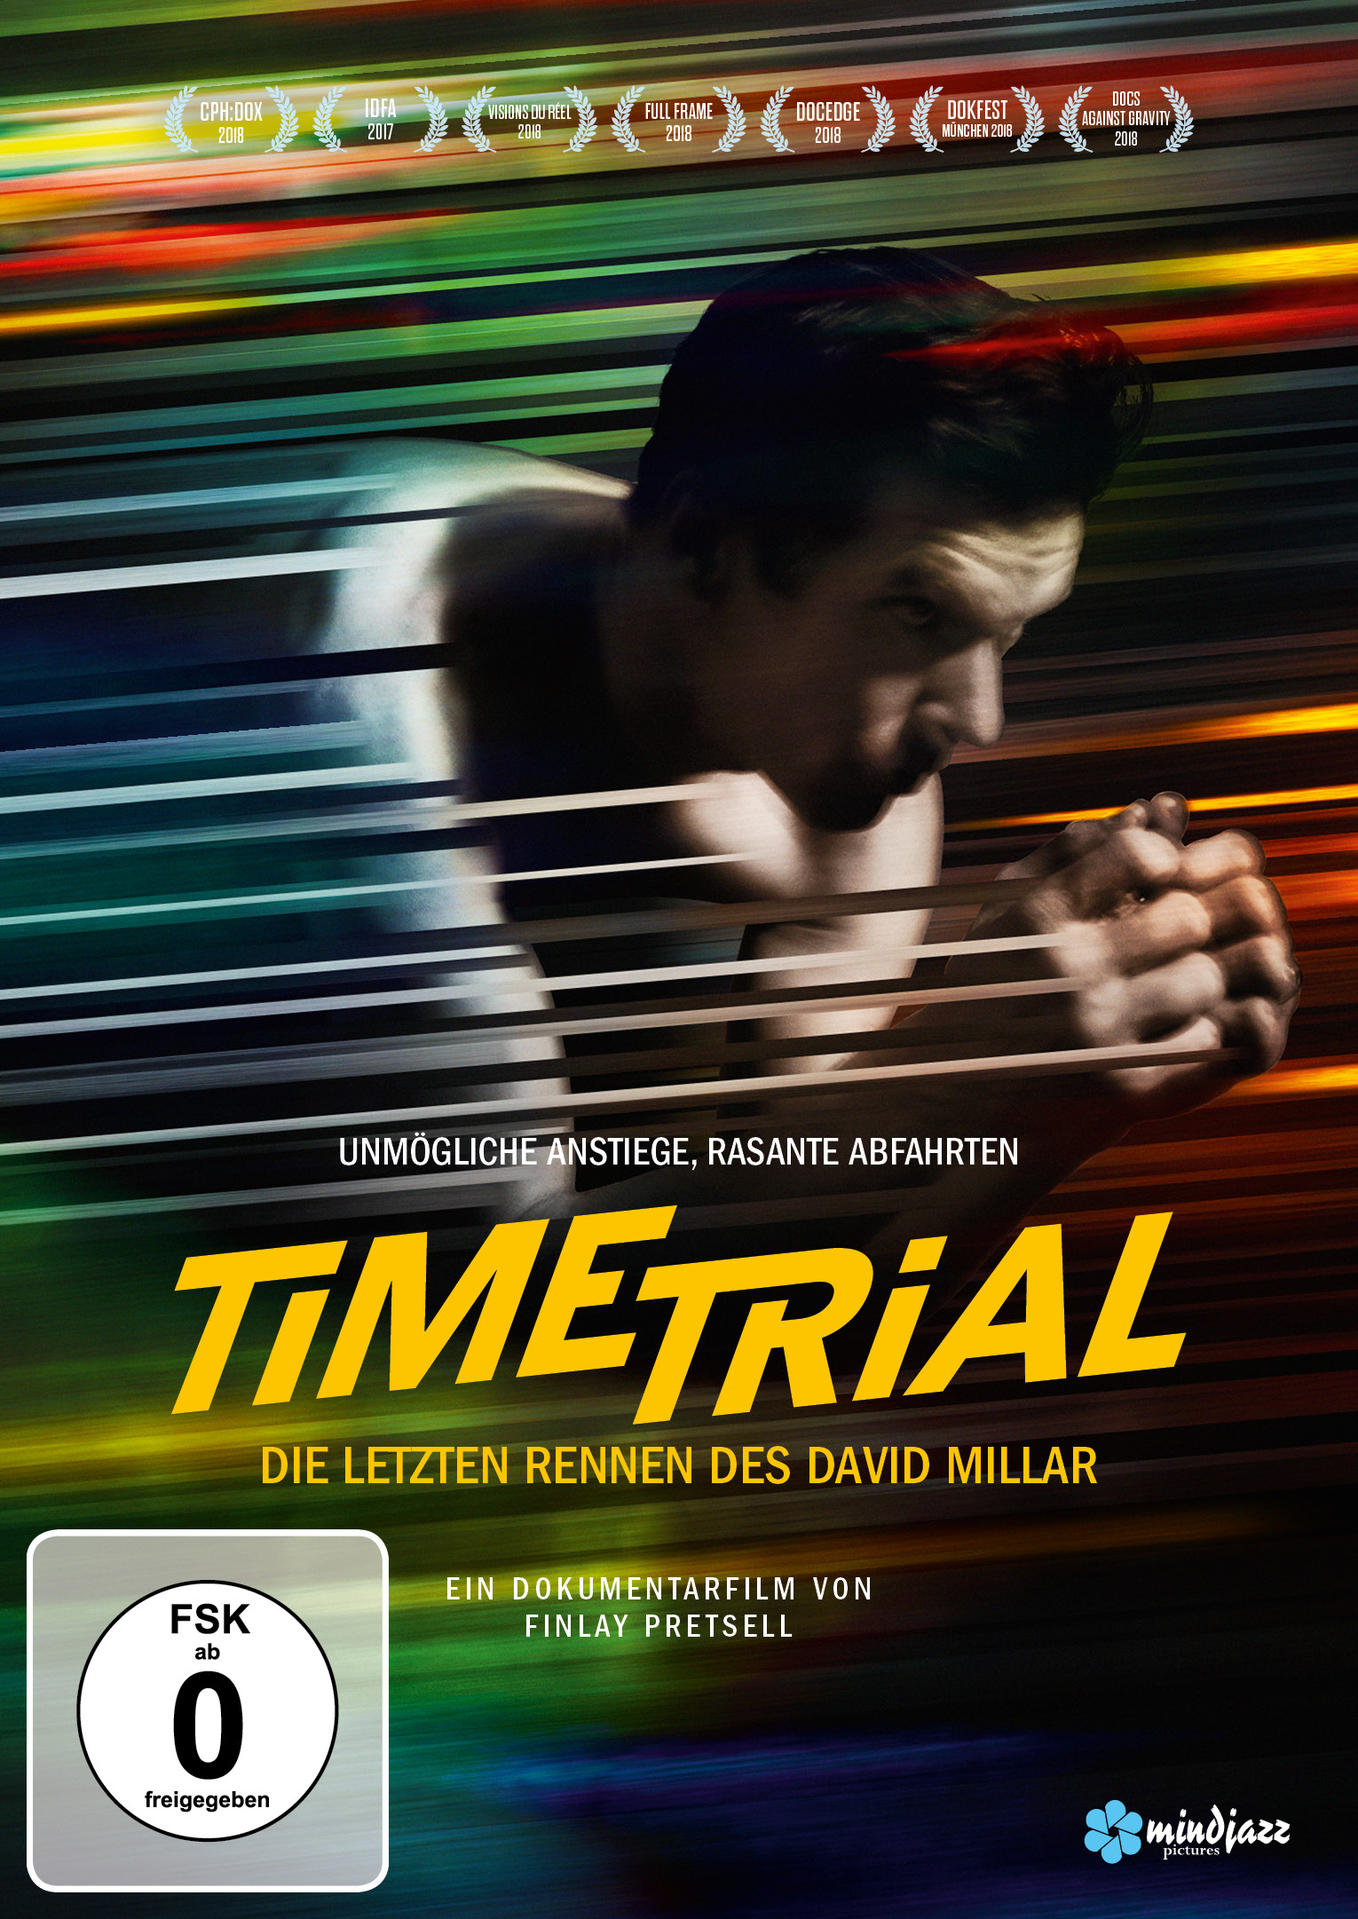 des Trial letzten - David Die Millar Time DVD Rennen